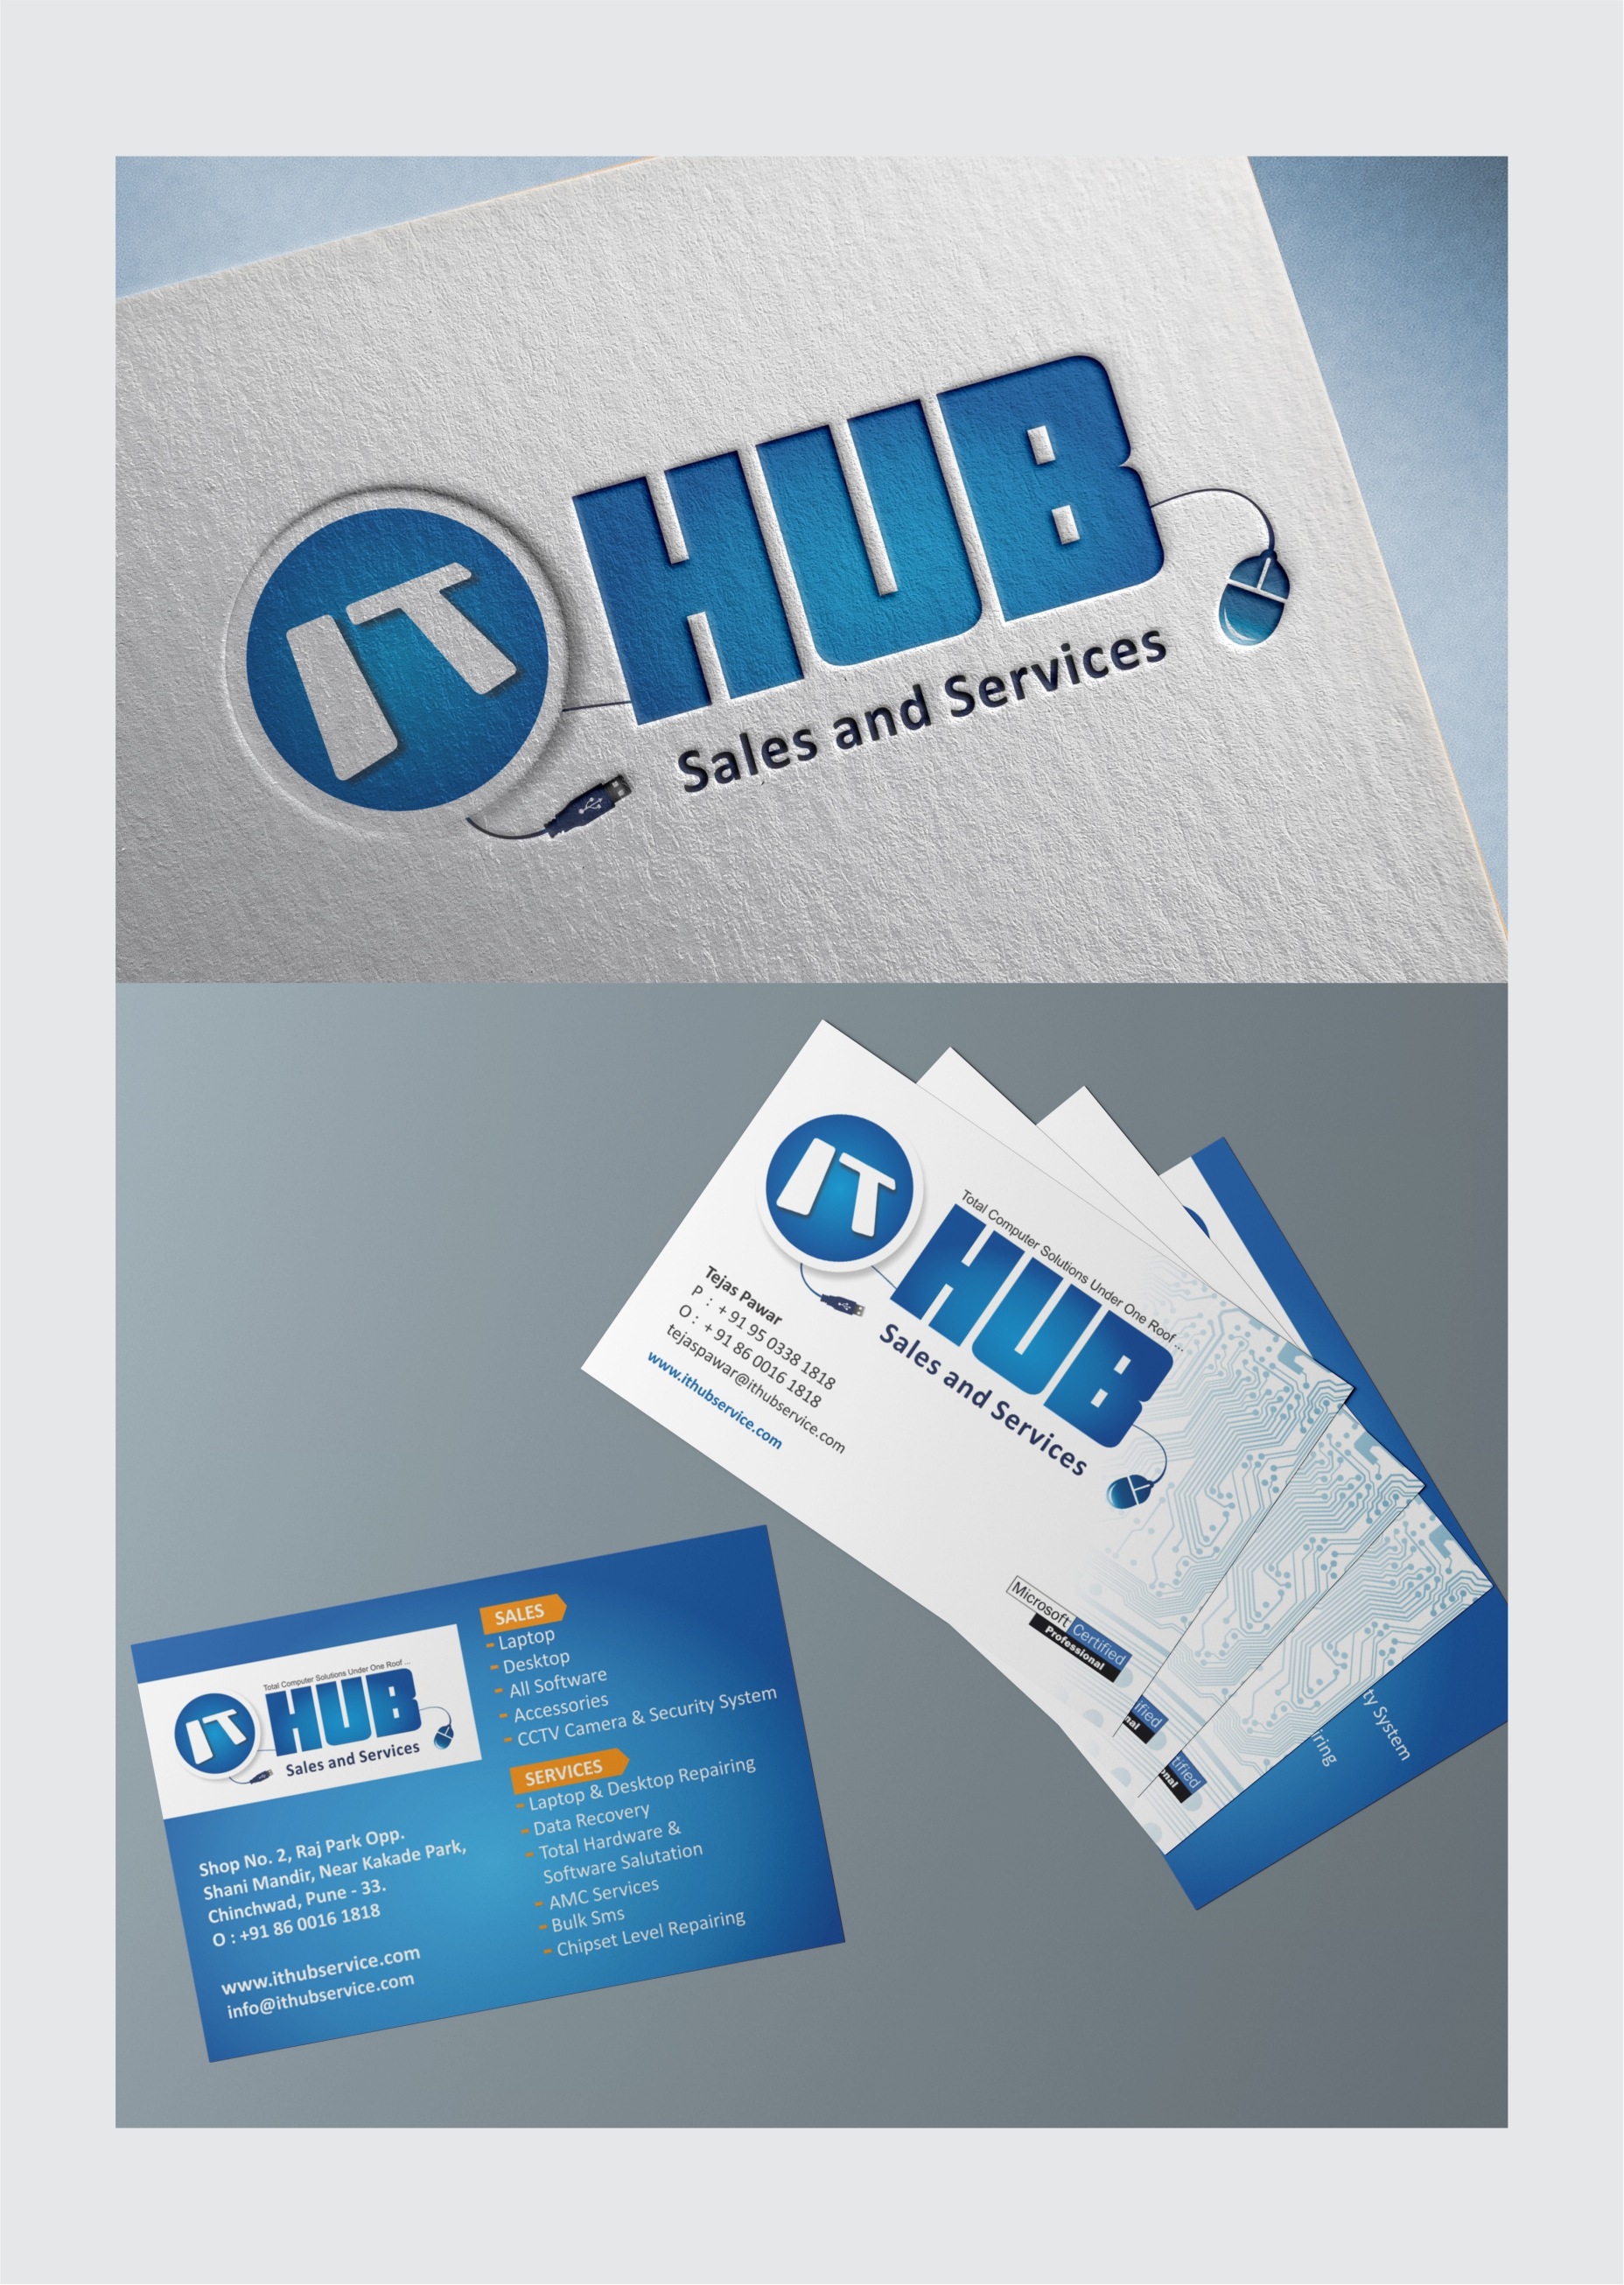 IT Hub Logo and Visiting card